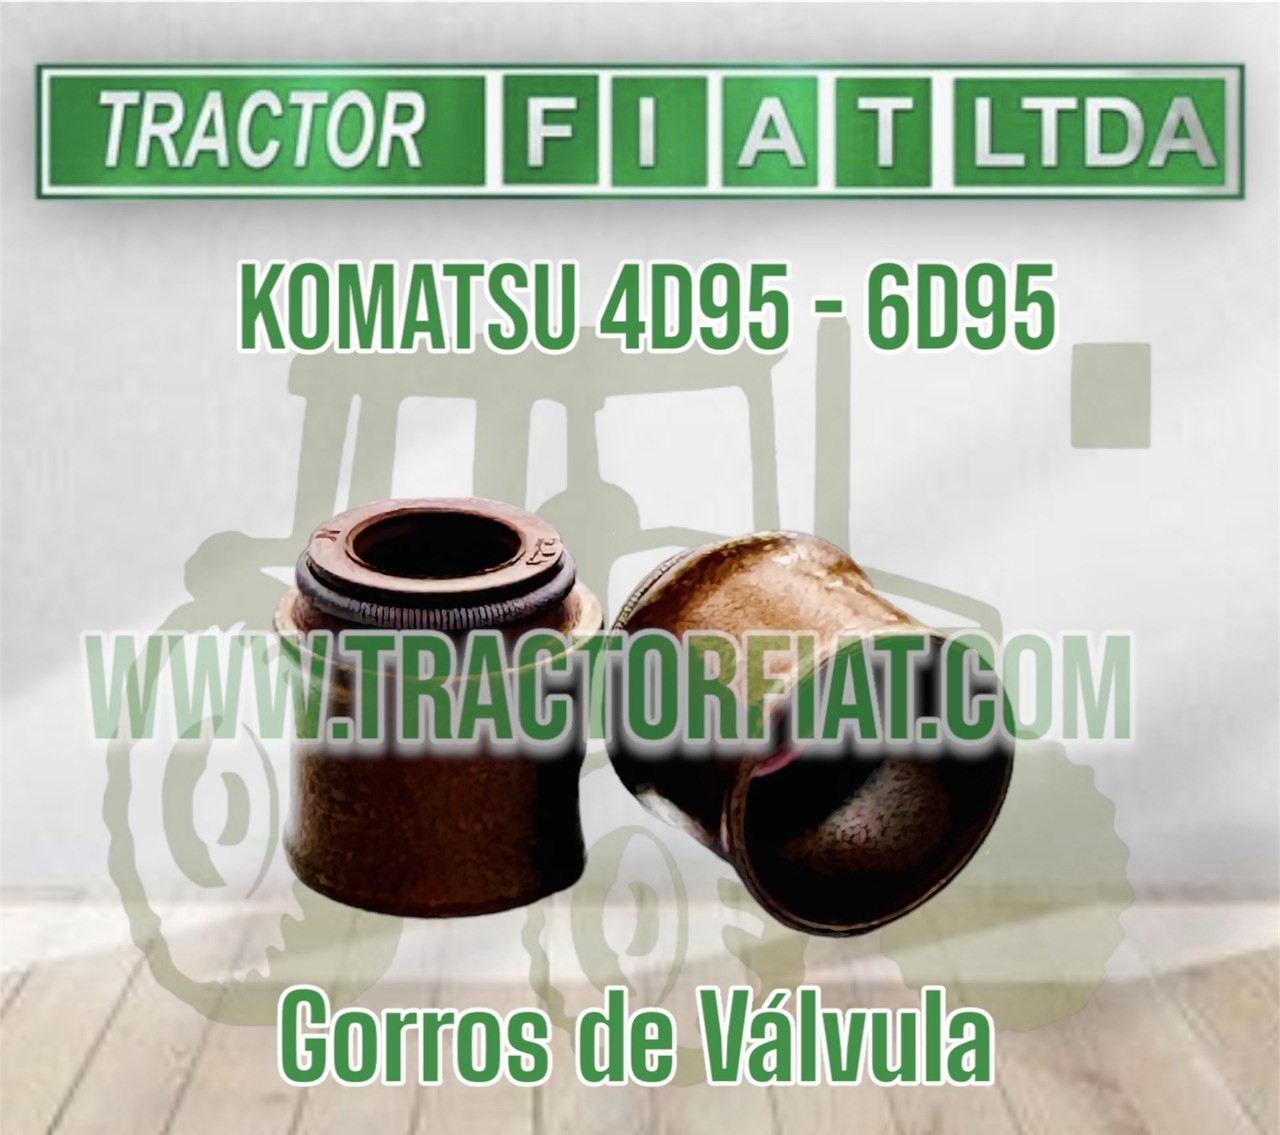 GORROS DE VALVULA - MOTOR KOMATSU 6D95/4D95